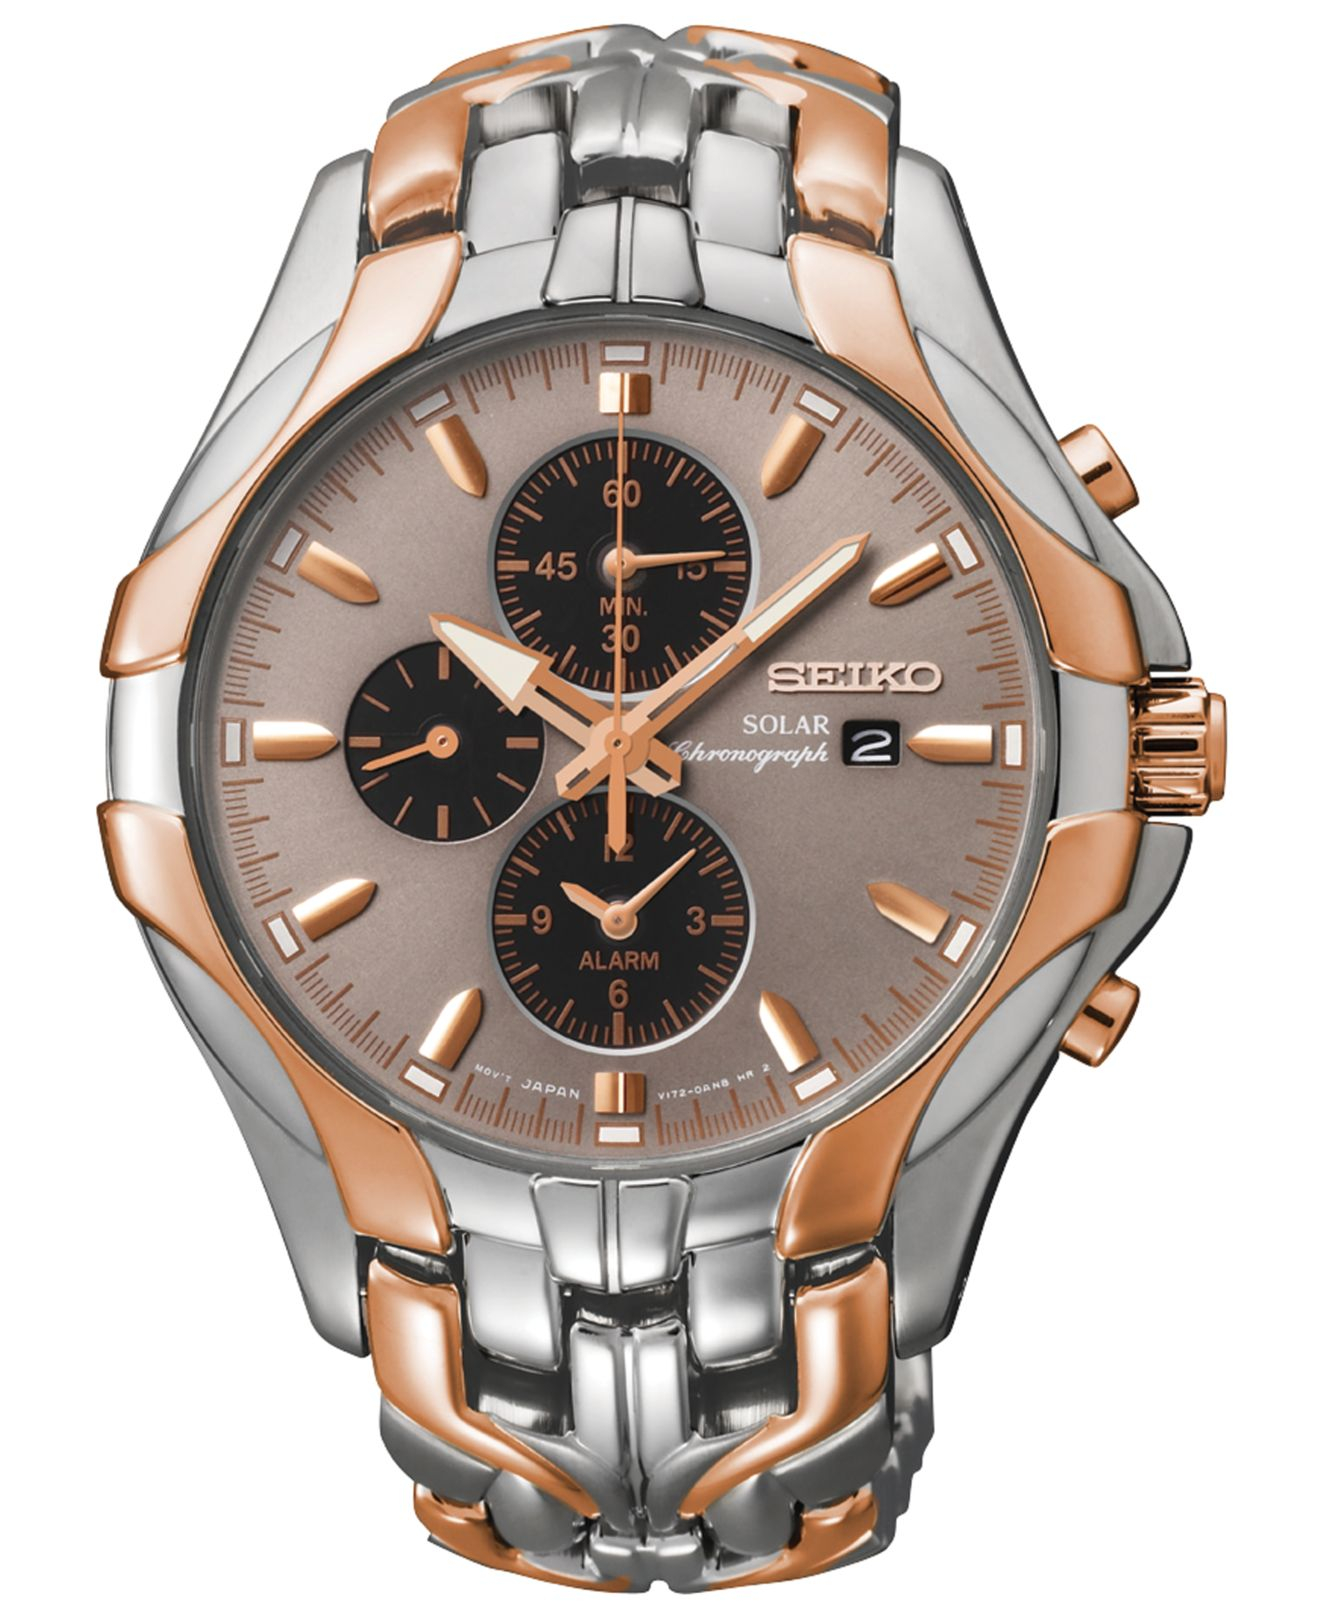 Seiko Men's Chronograph Solar Two-tone Stainless Steel Bracelet Watch